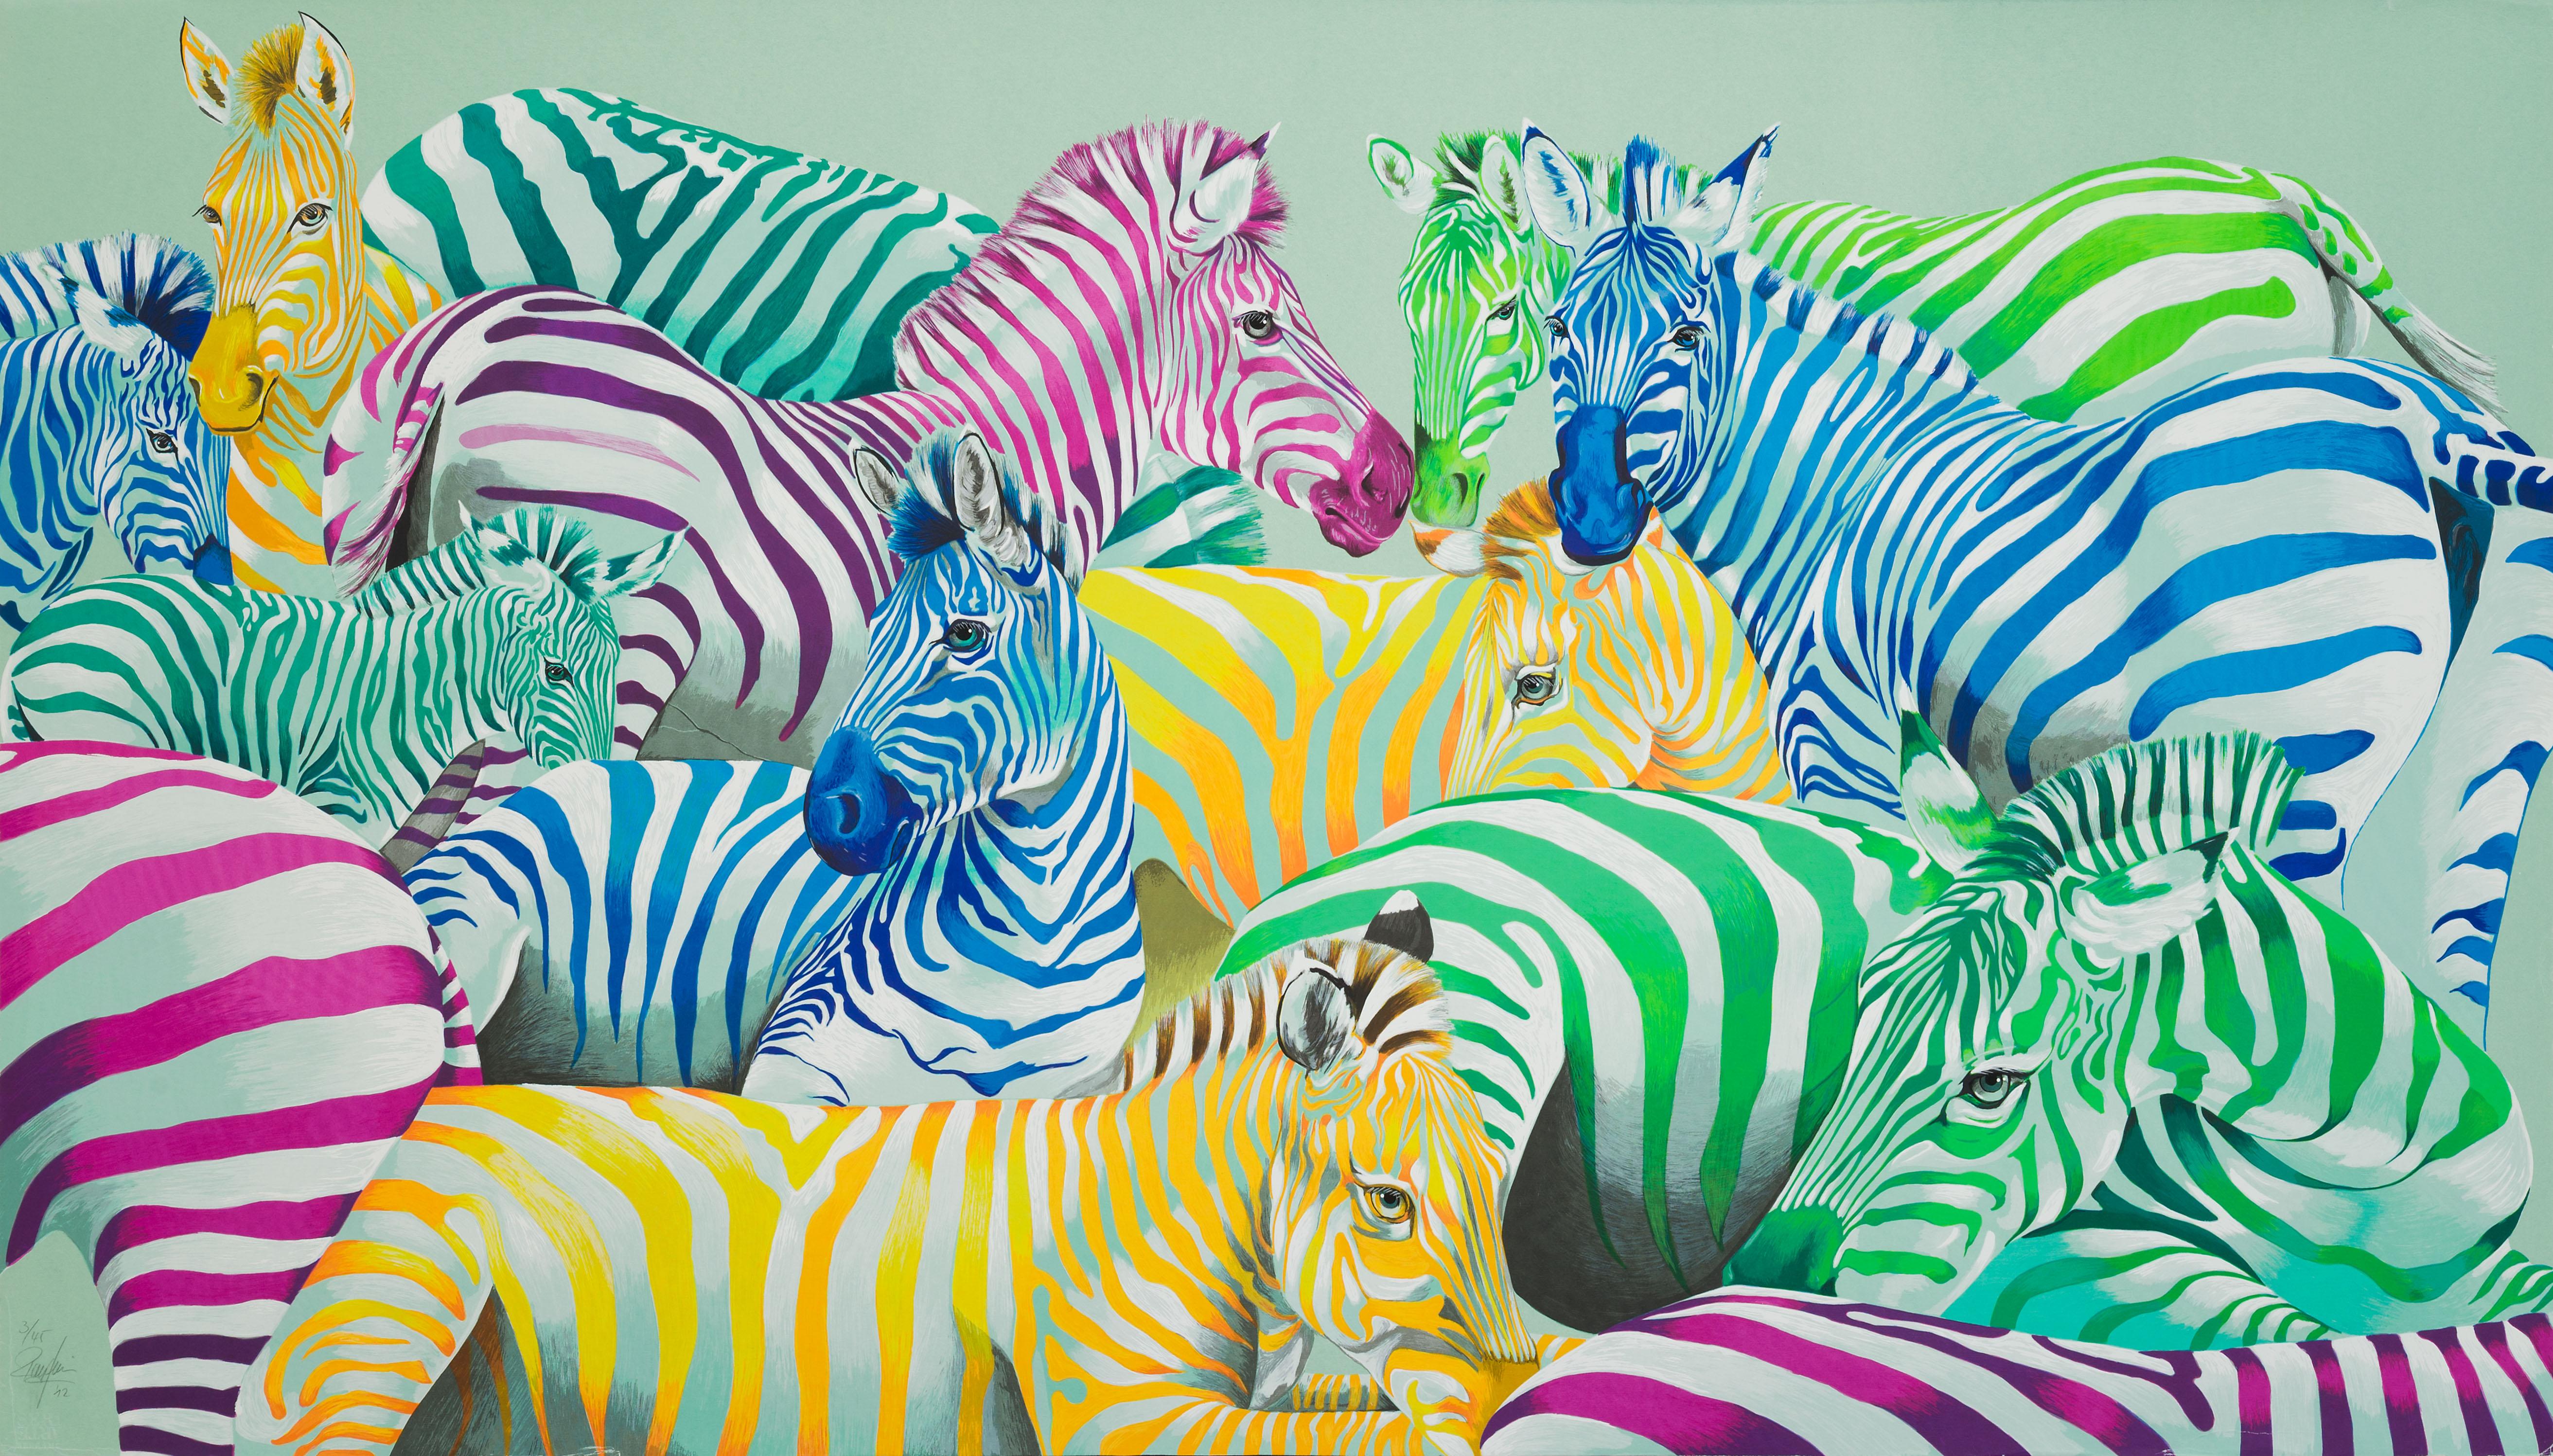 Rolf Knie  Animal Print - Zebra parade postmodern pop art of colorful zebra animal herd in vibrant colors 